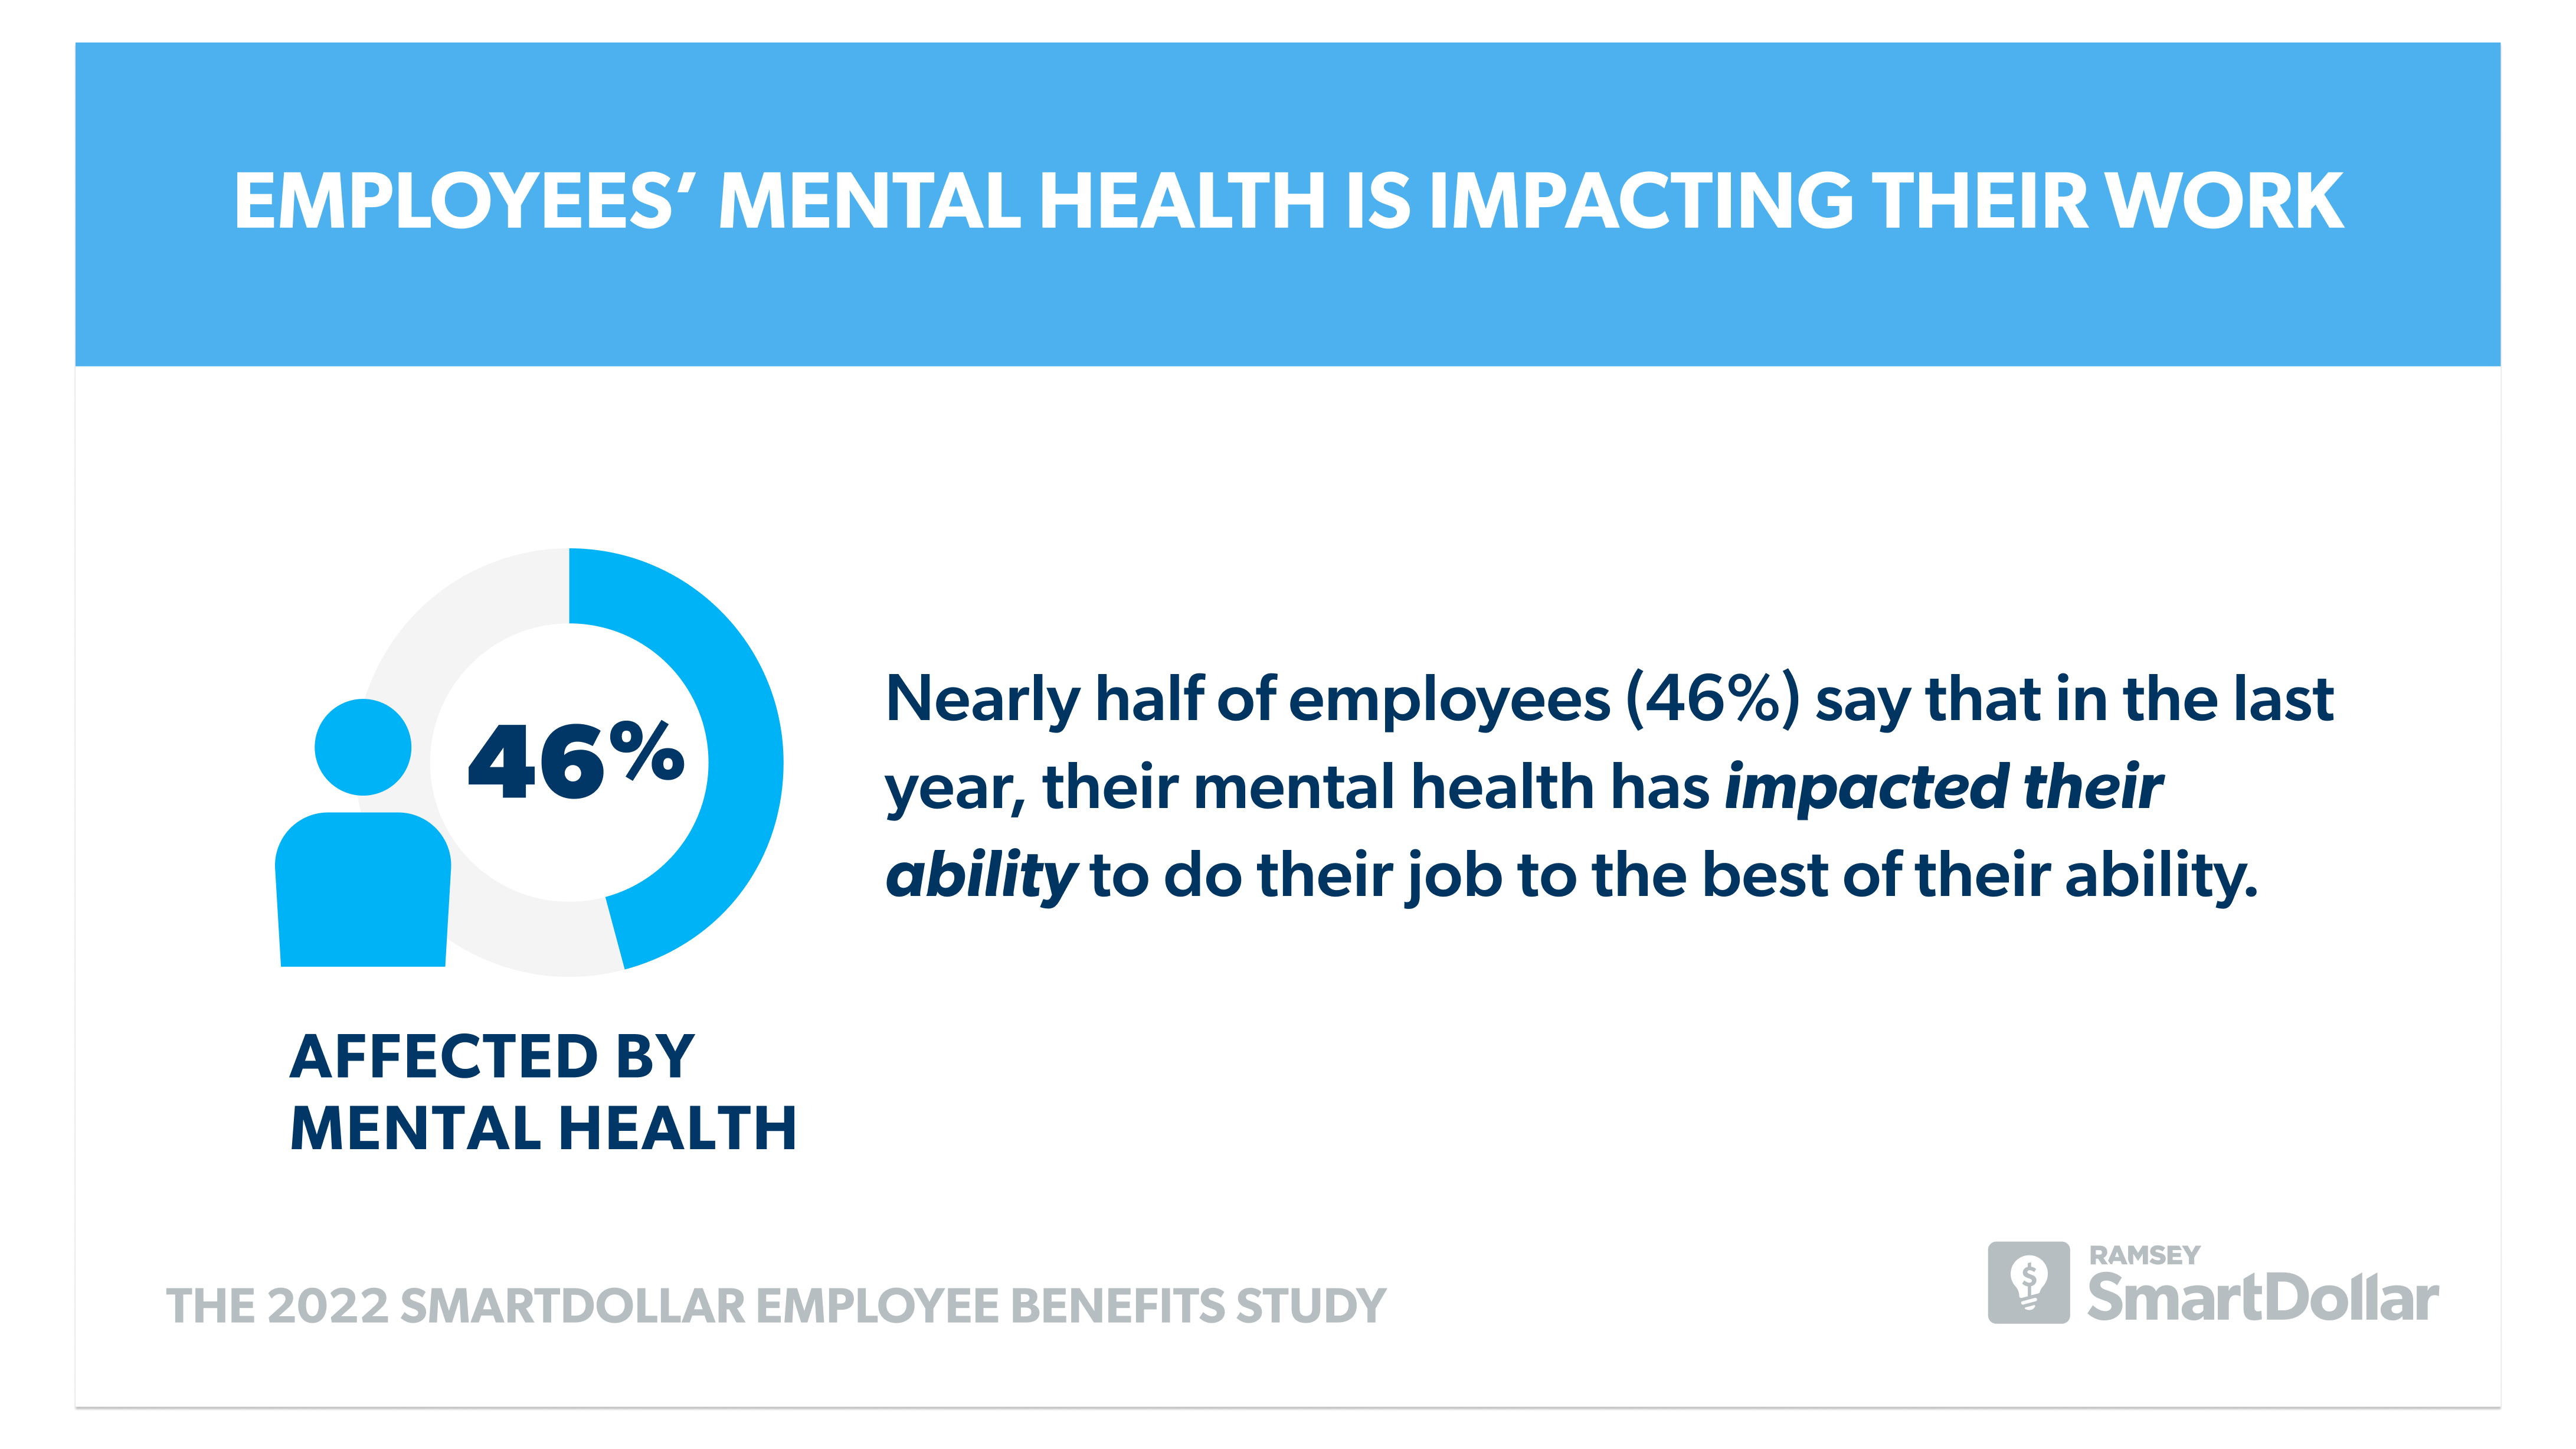 la santé mentale des employés ayant un impact sur leur travail